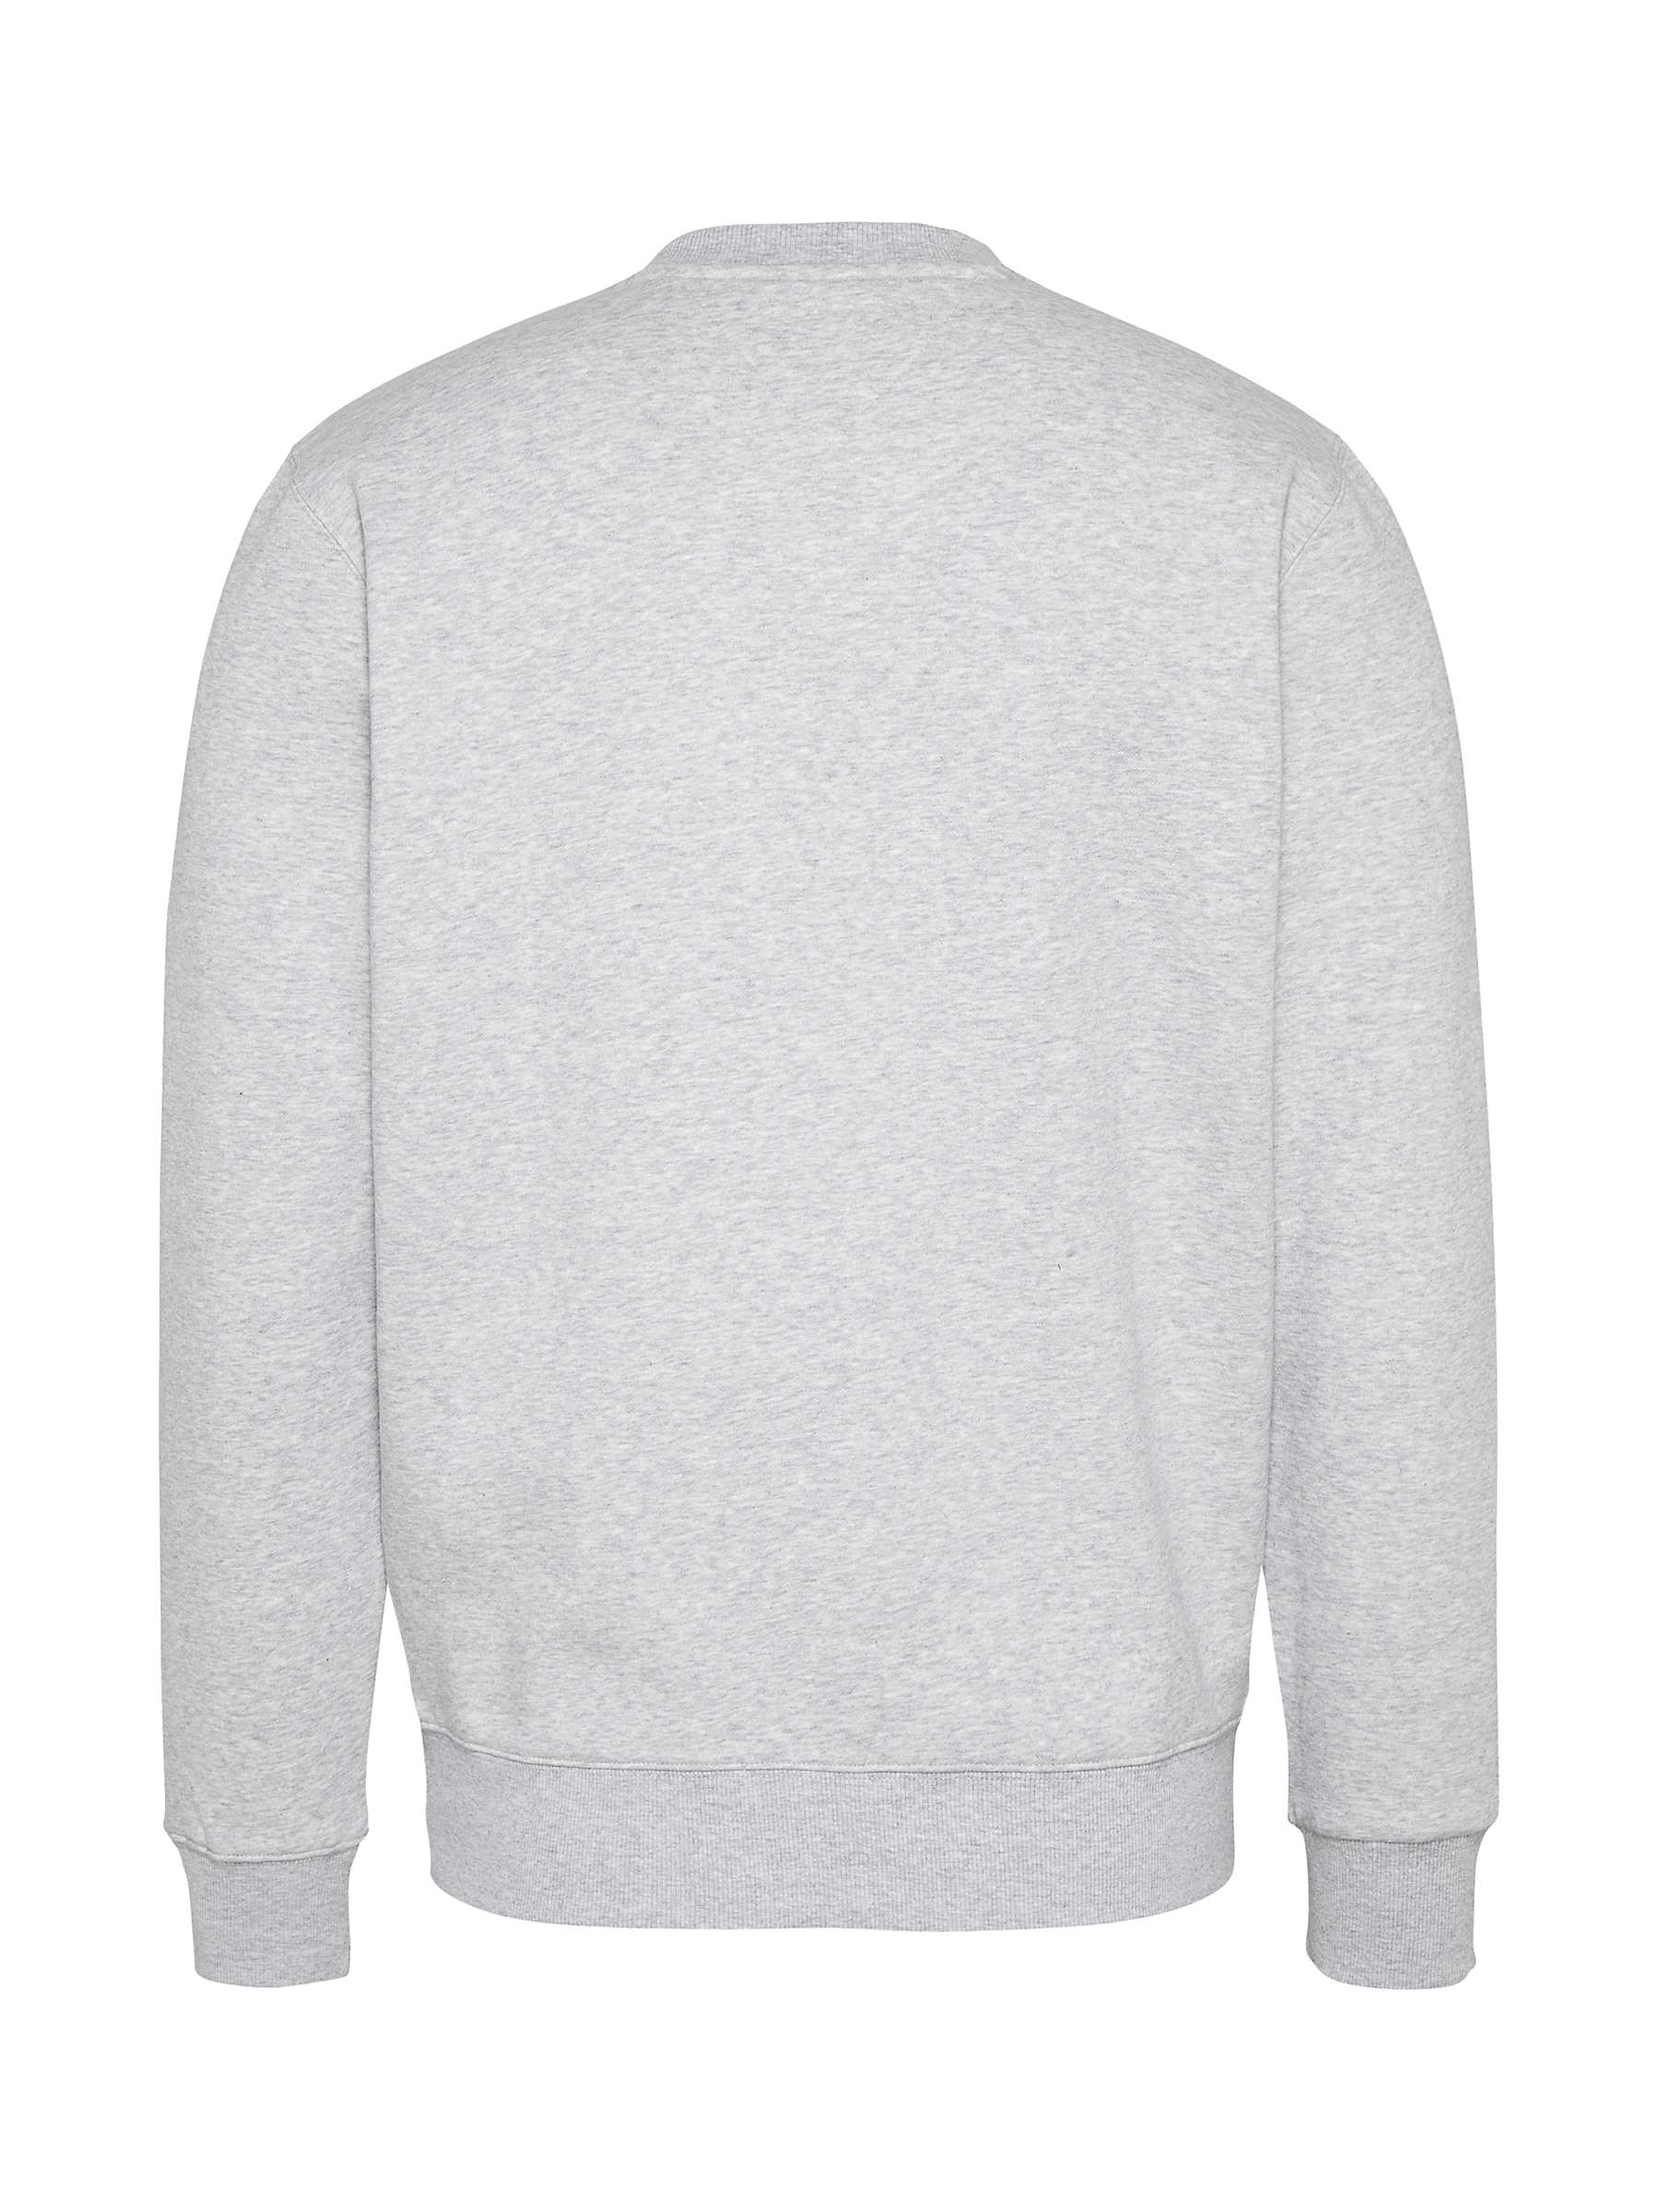 Buy Tommy Jeans Fleece Crew Neck Sweatshirt Online at johnlewis.com